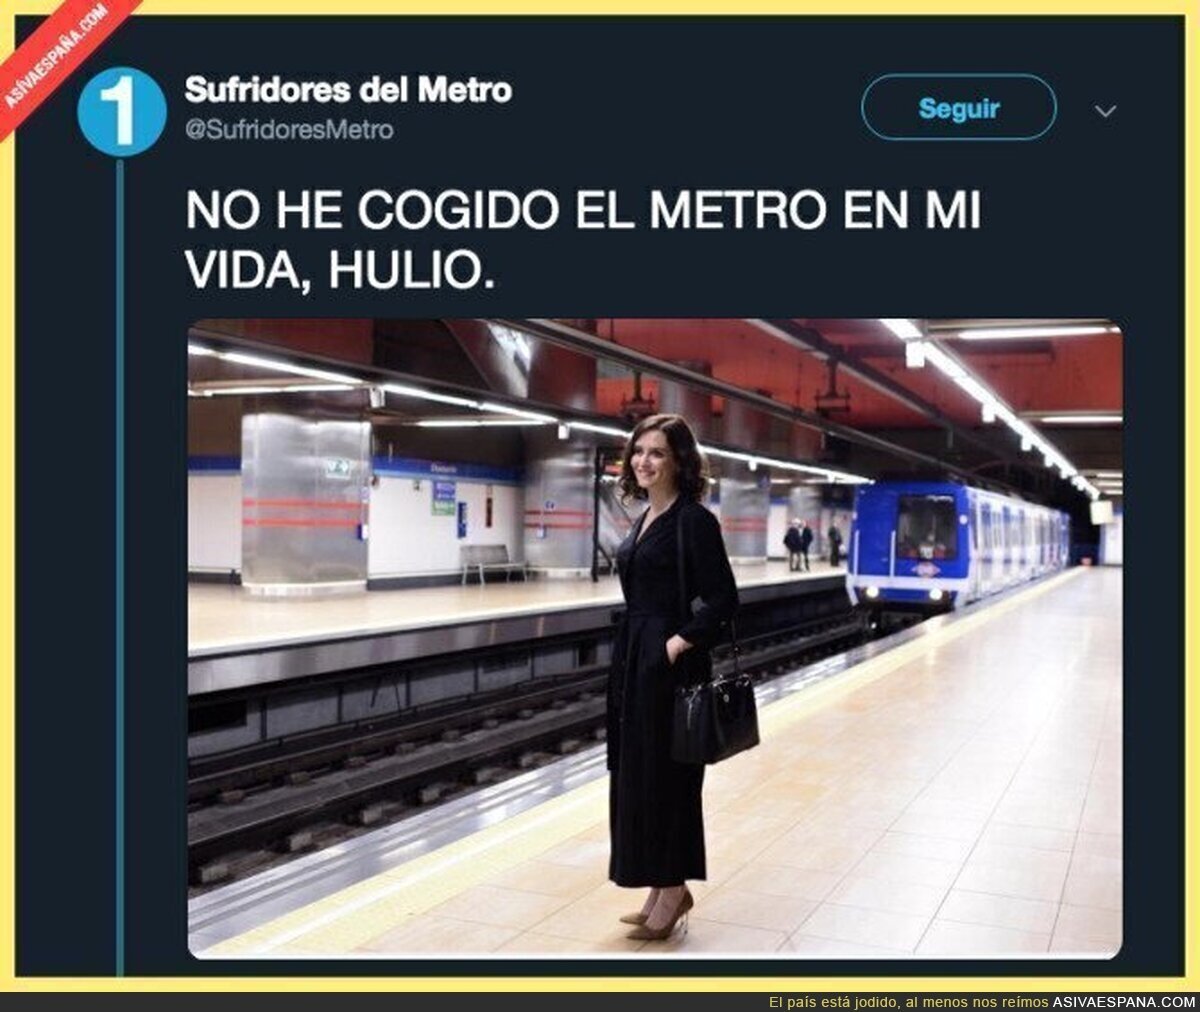 Isabel Díaz Ayuso, candidata a la Comunidad de Madrid por el Partido Popular cogiendo el metro sin pasajeros en los andenes, lo normal